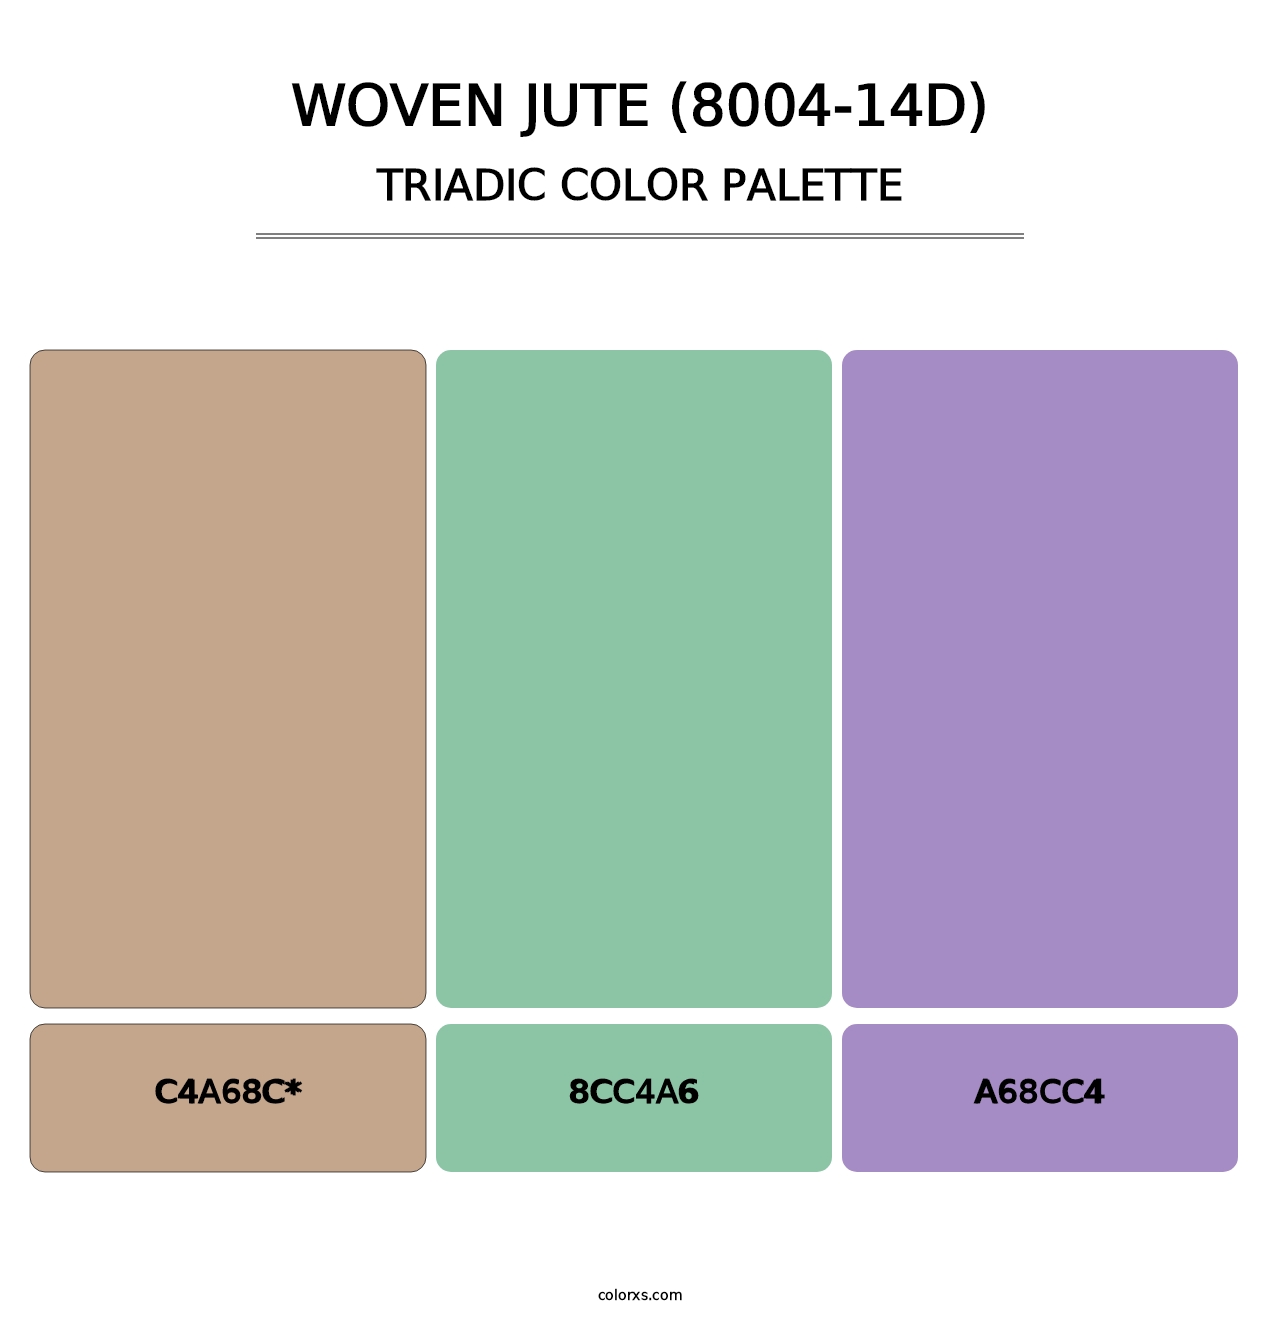 Woven Jute (8004-14D) - Triadic Color Palette